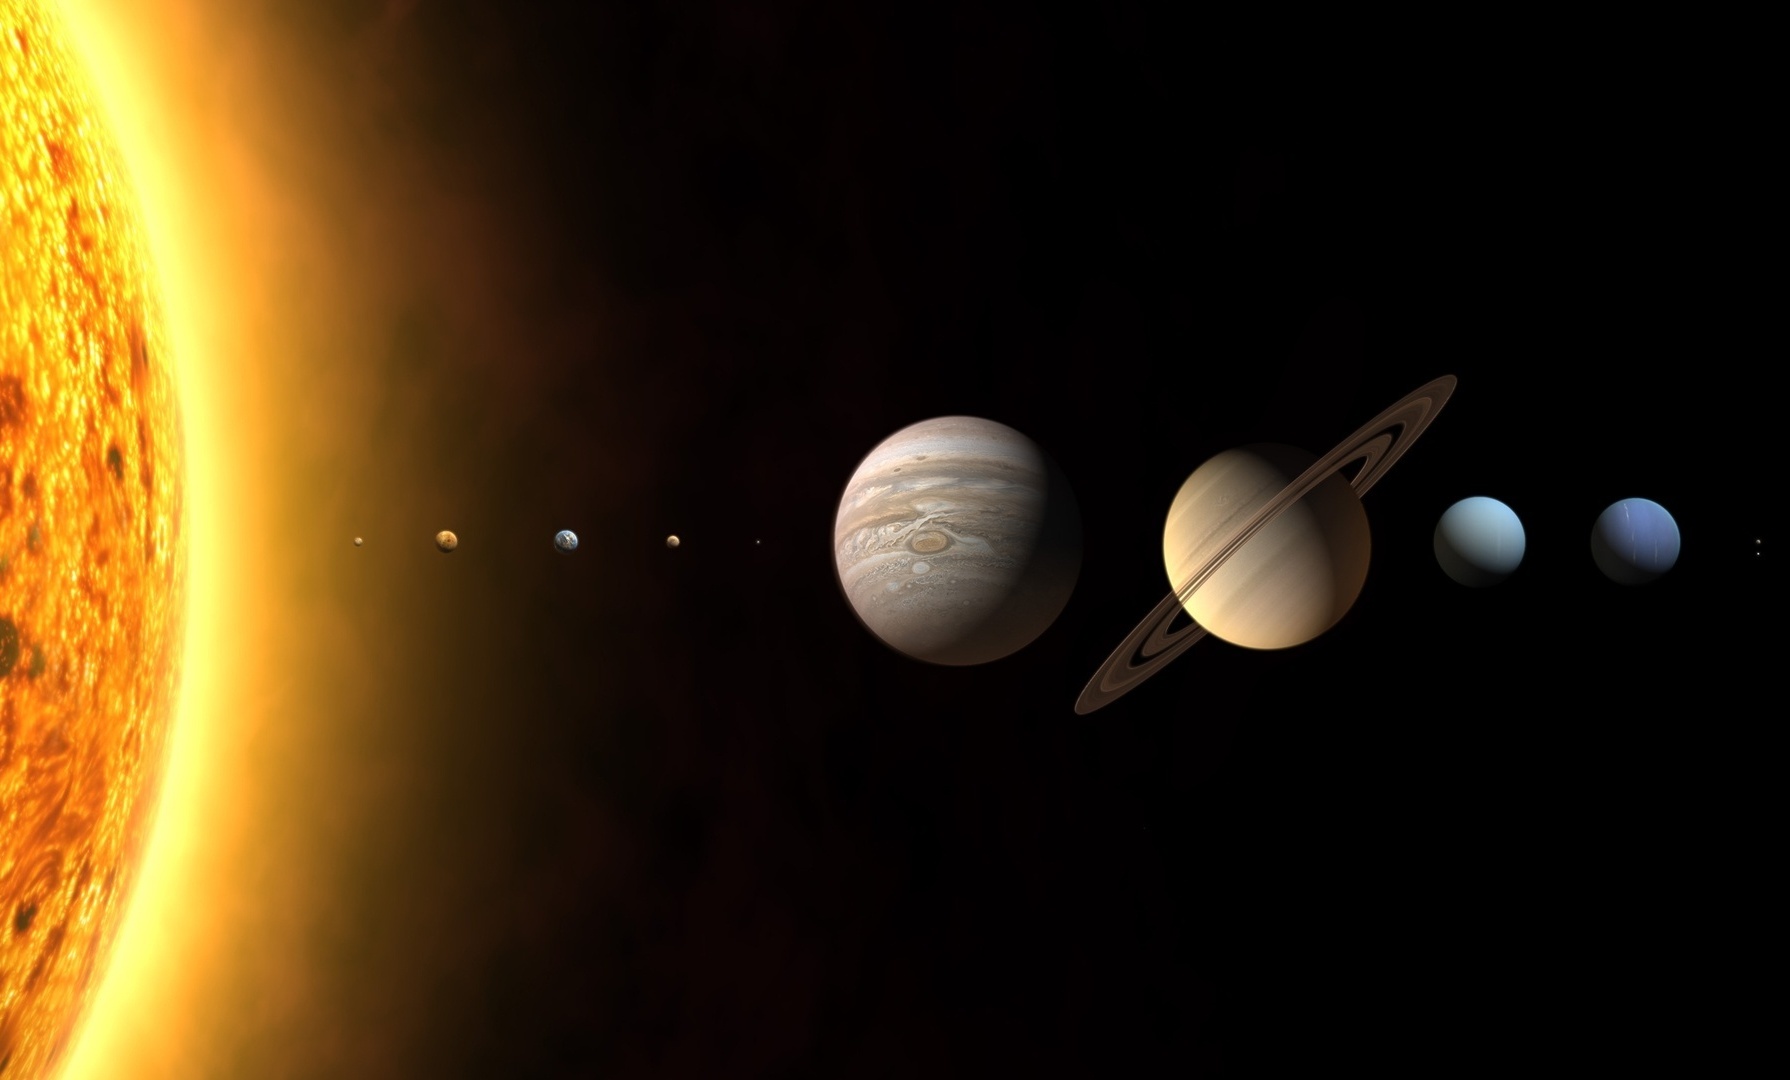 размеры планет солнечной системы картинки